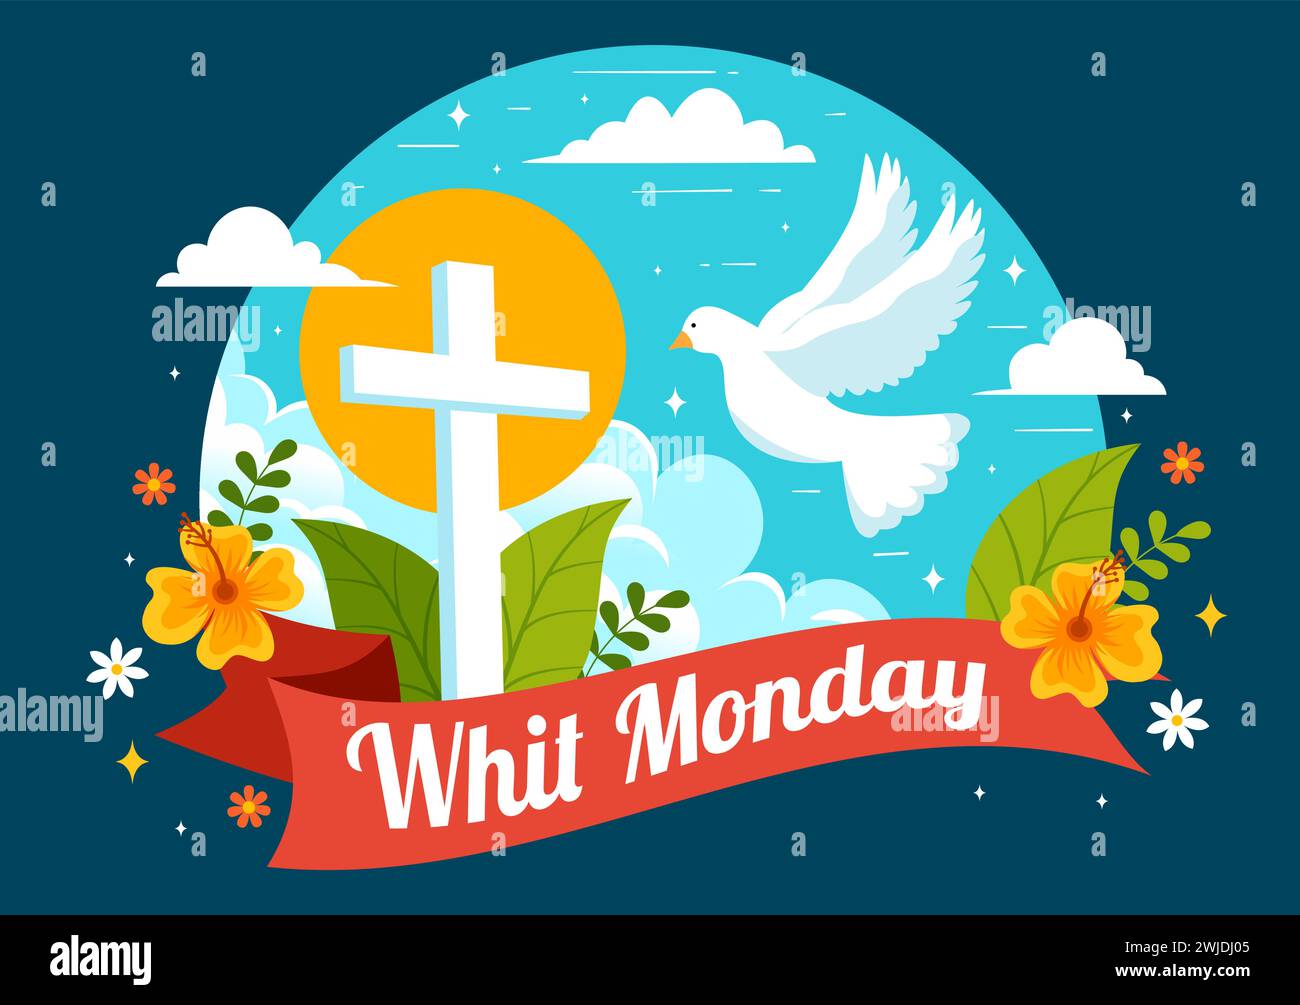 Whit Monday illustration vectorielle avec un pigeon ou une colombe pour les vacances de la communauté chrétienne du Saint-esprit dans la conception de fond de dessin animé plat Illustration de Vecteur